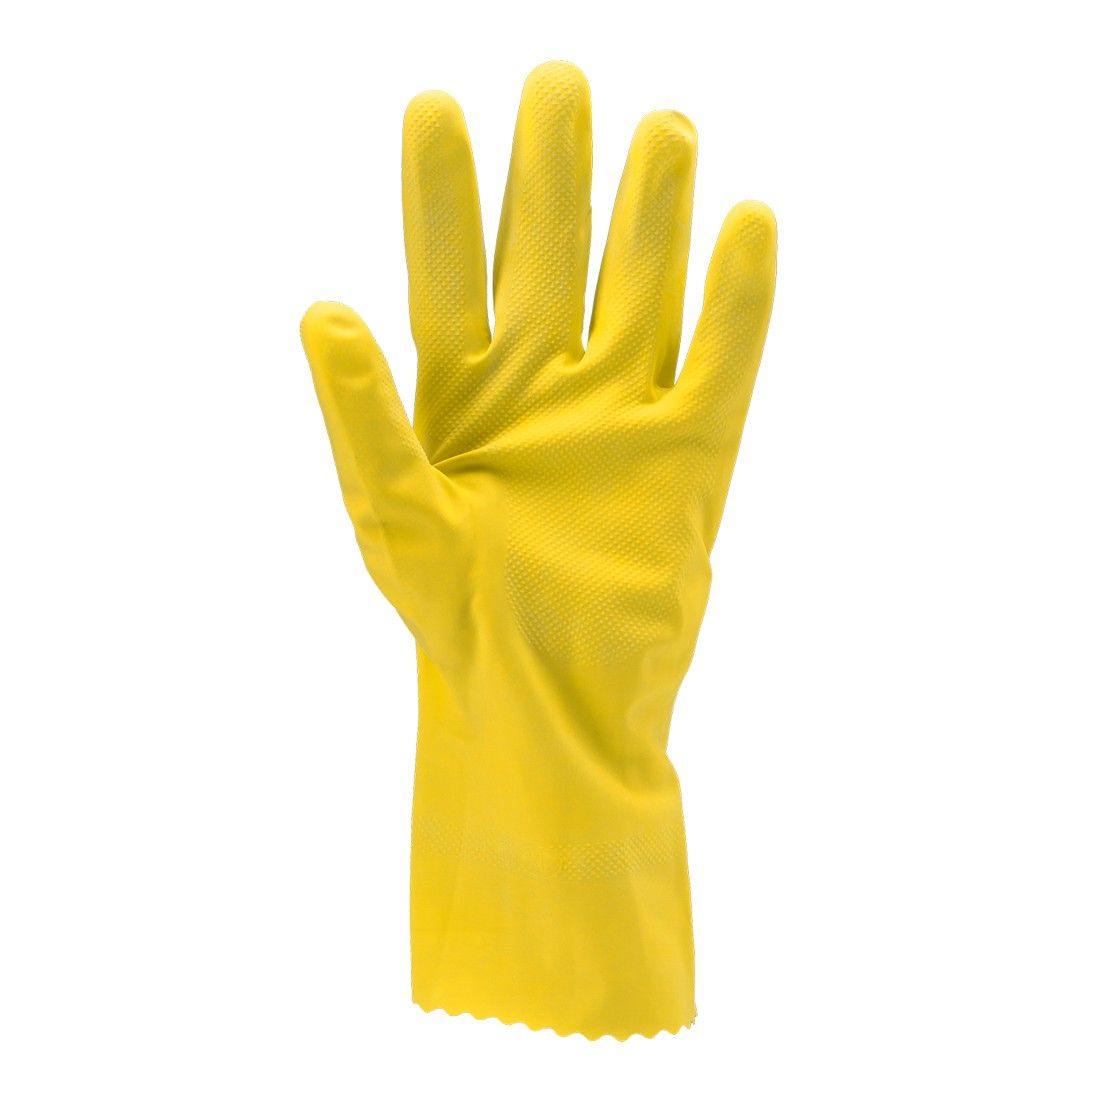 Coverguard - Gants de protection chimique jaune en latex naturel